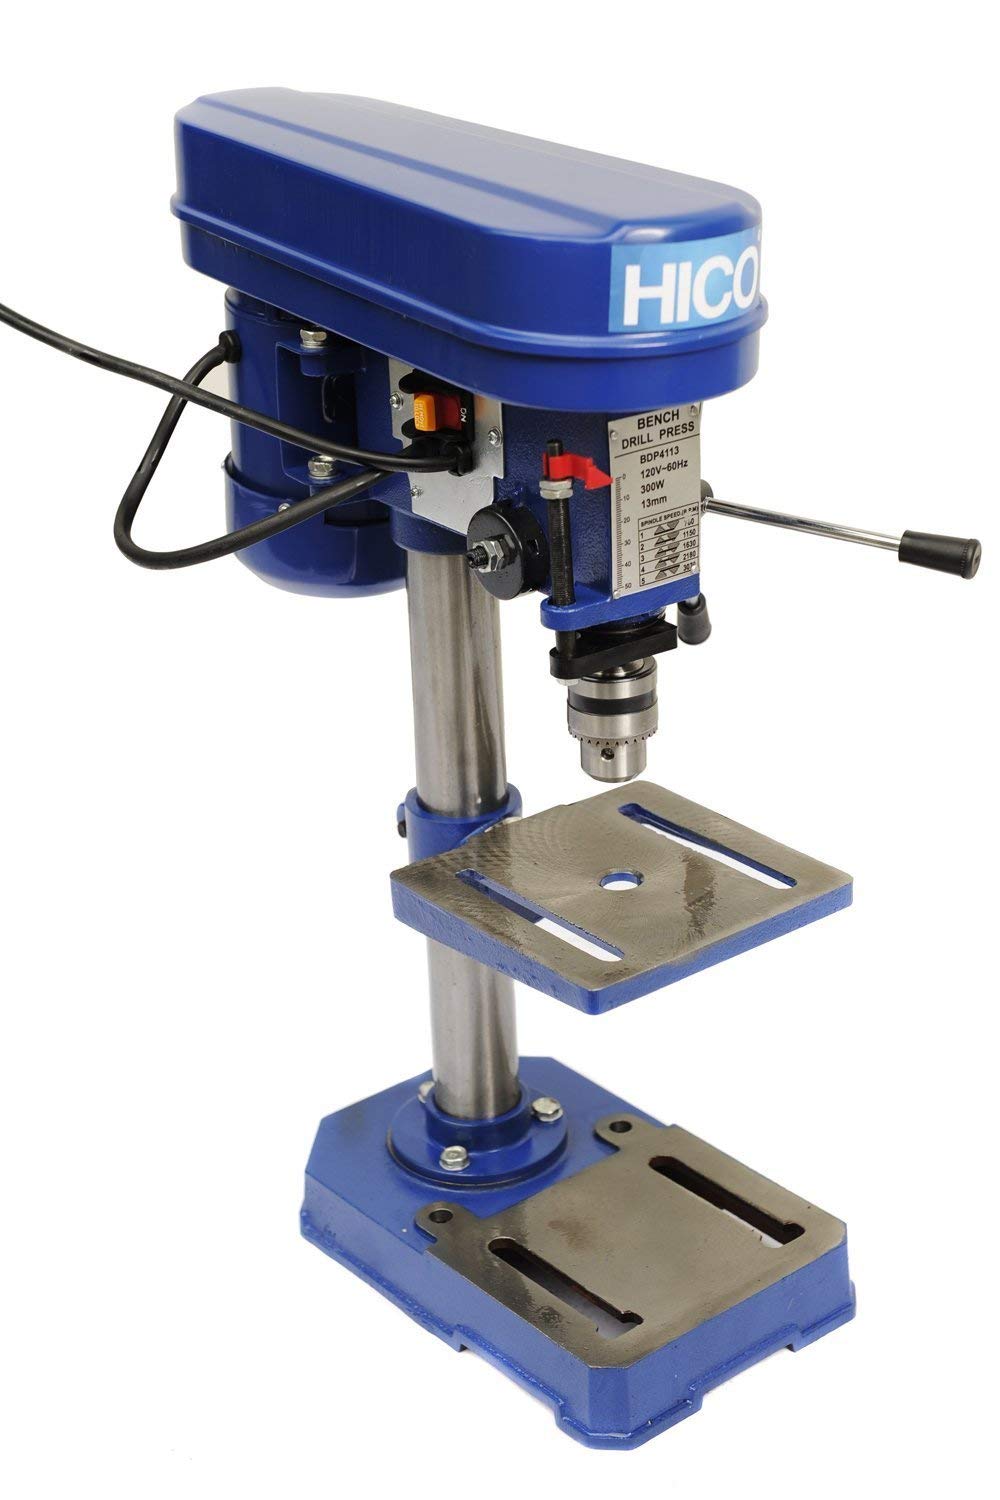 HICO Bench Top Drill Press